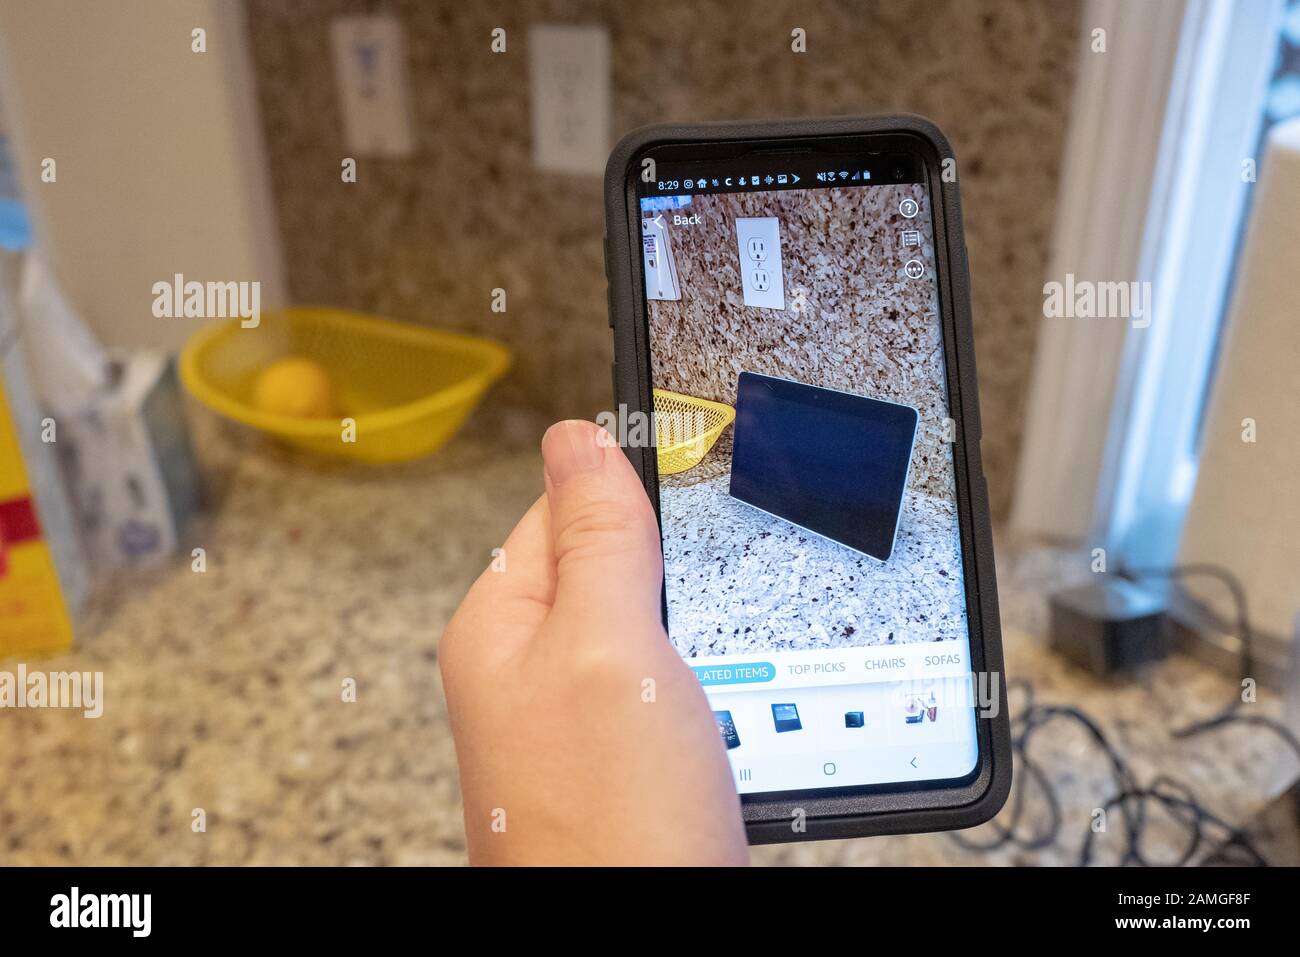 Main d'un homme tenant un smartphone et utilisant les fonctionnalités De  Réalité augmentée dans l'application Amazon shopping pour visualiser un  appareil Amazon Echo Show sur un comptoir de cuisine, San Ramon, Californie,